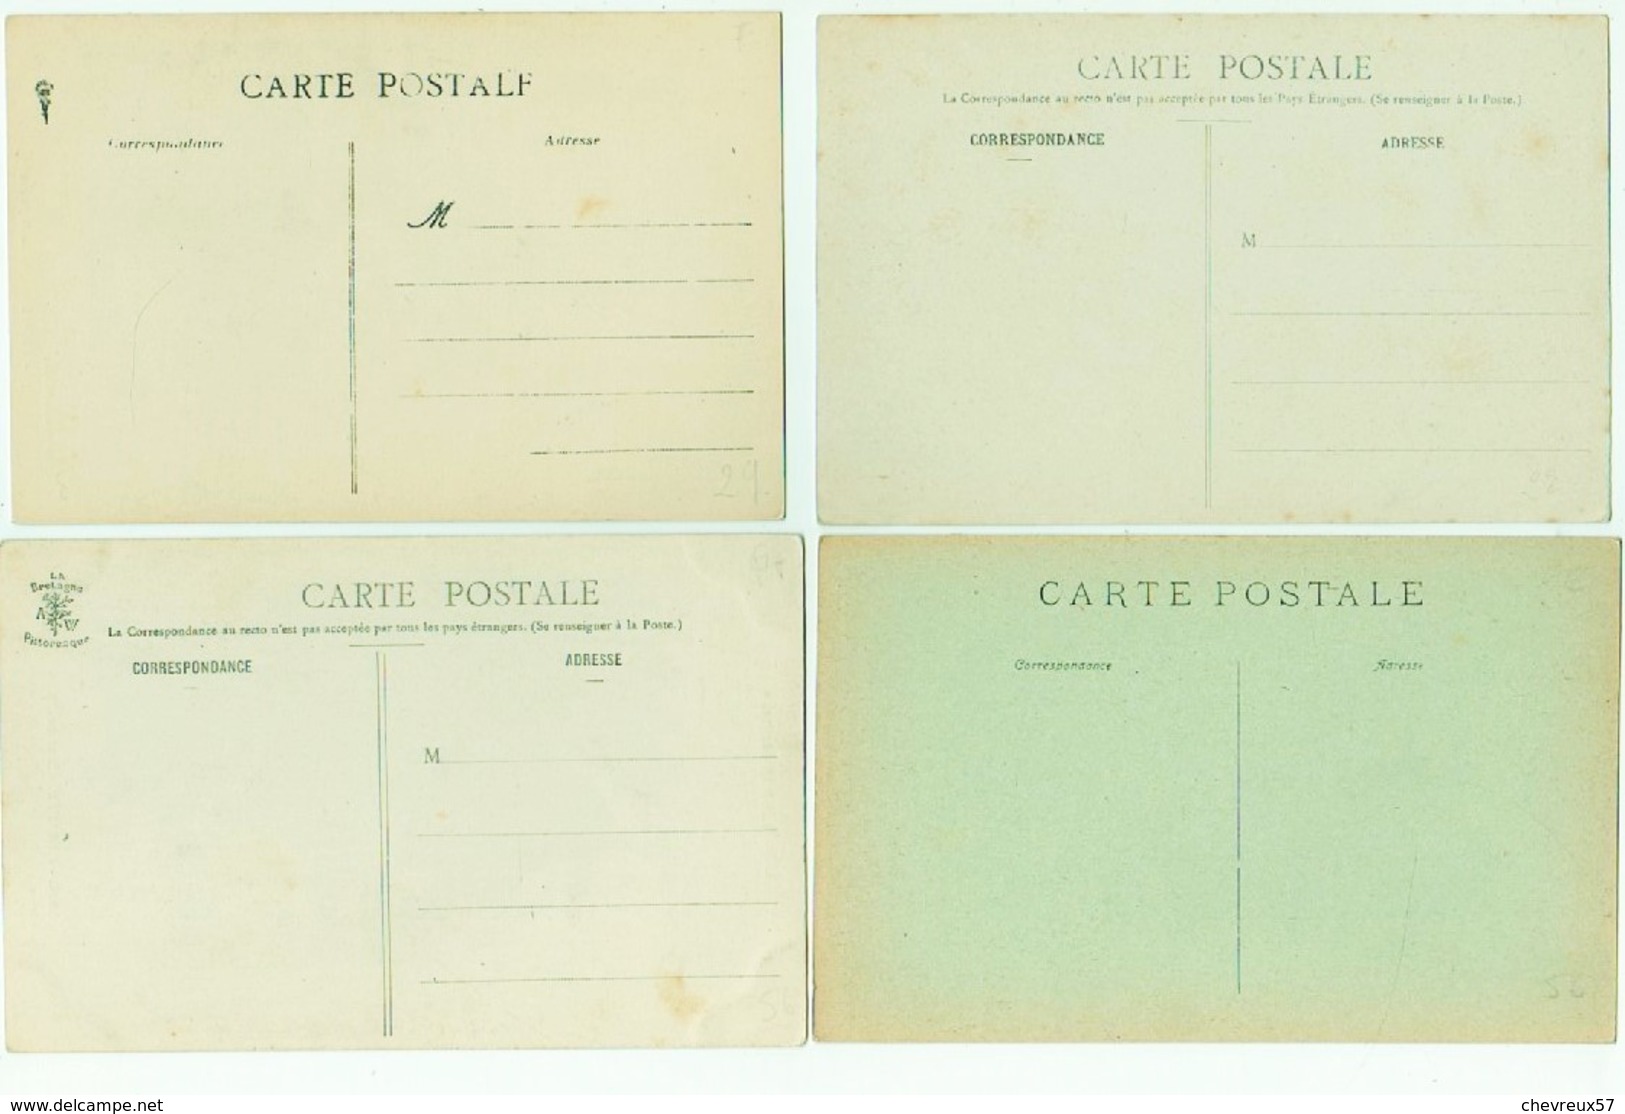 VILLES ET VILLAGES DE FRANCE - LOT - 30 - joli lot 35 cartes anciennes dont Quimper-Brest-Pontivy-Départ 1€